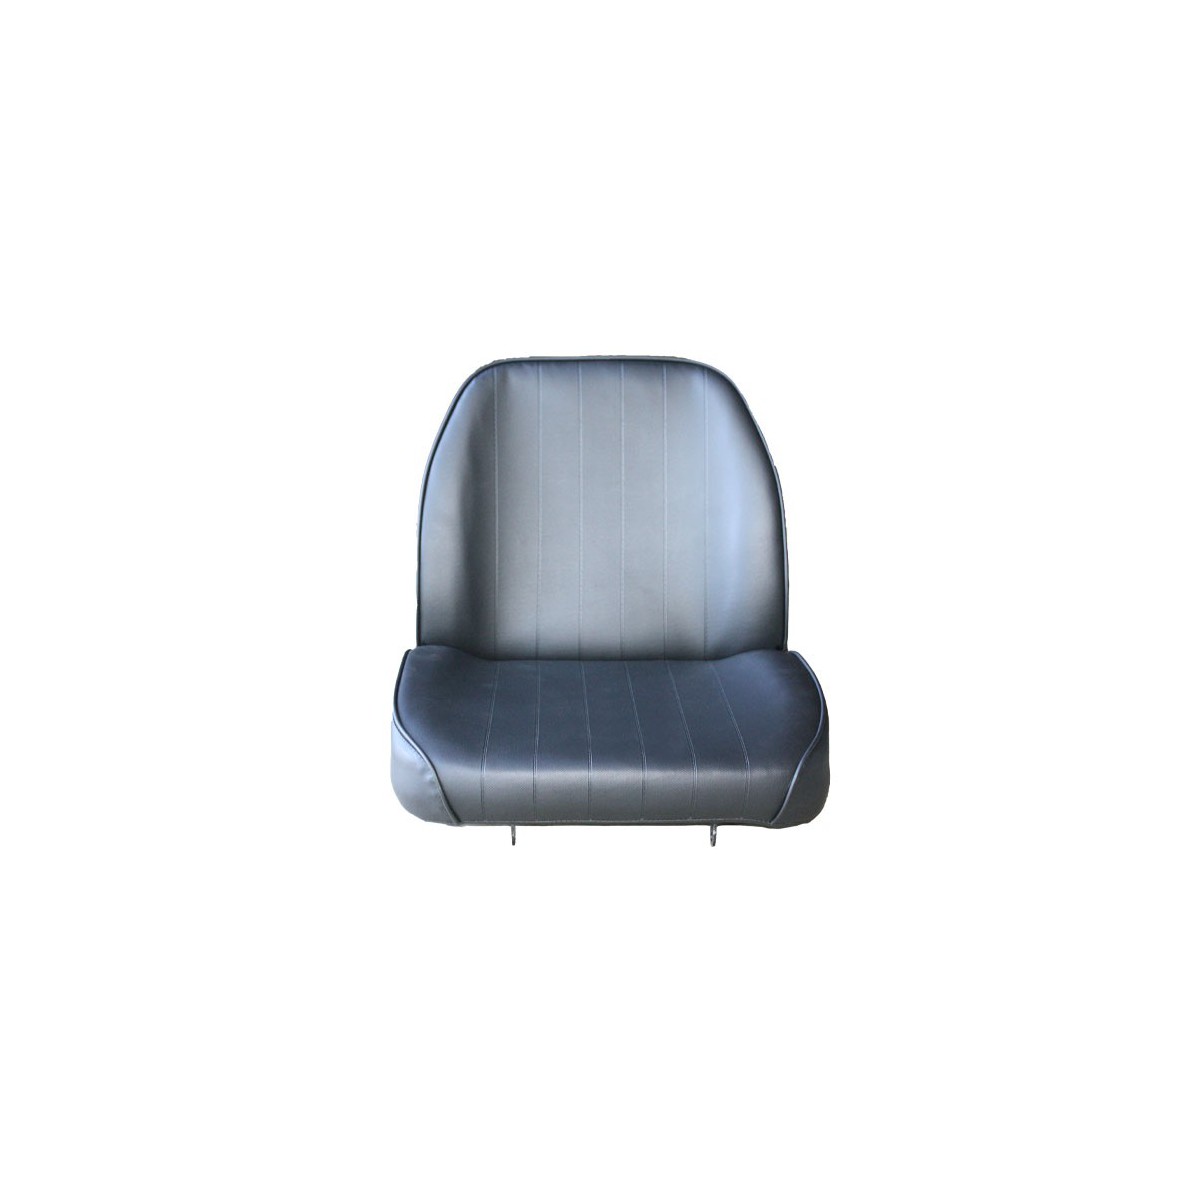 Seat L4508, 77 x 45 cm